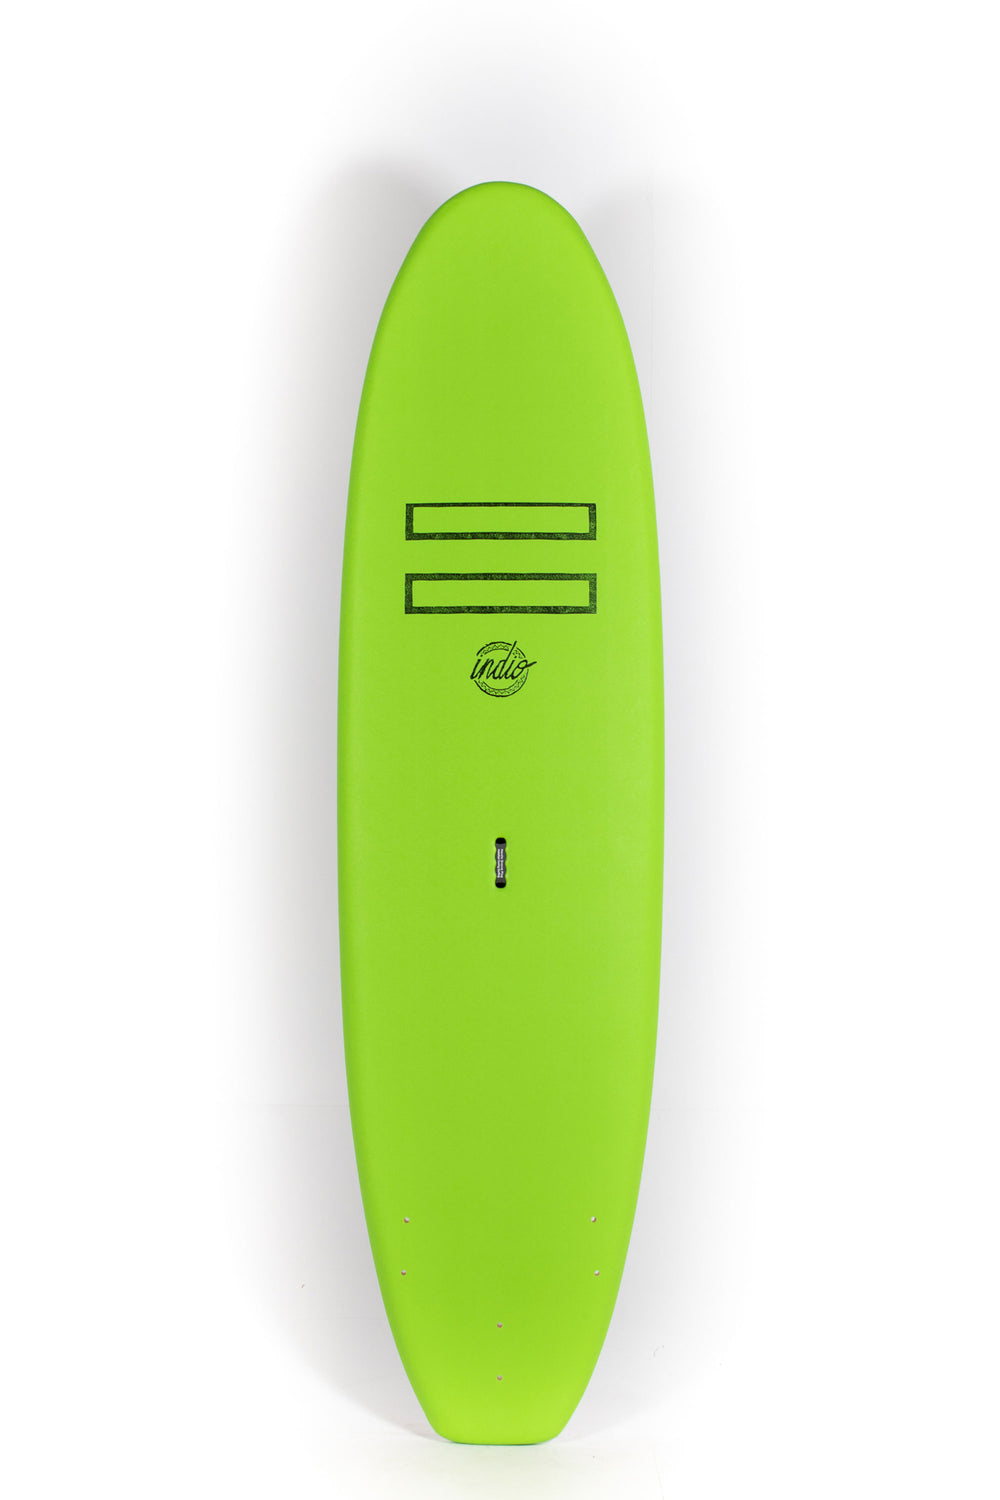 Pukas Surf Shop - INDIO - EASY RIDER -  8'0